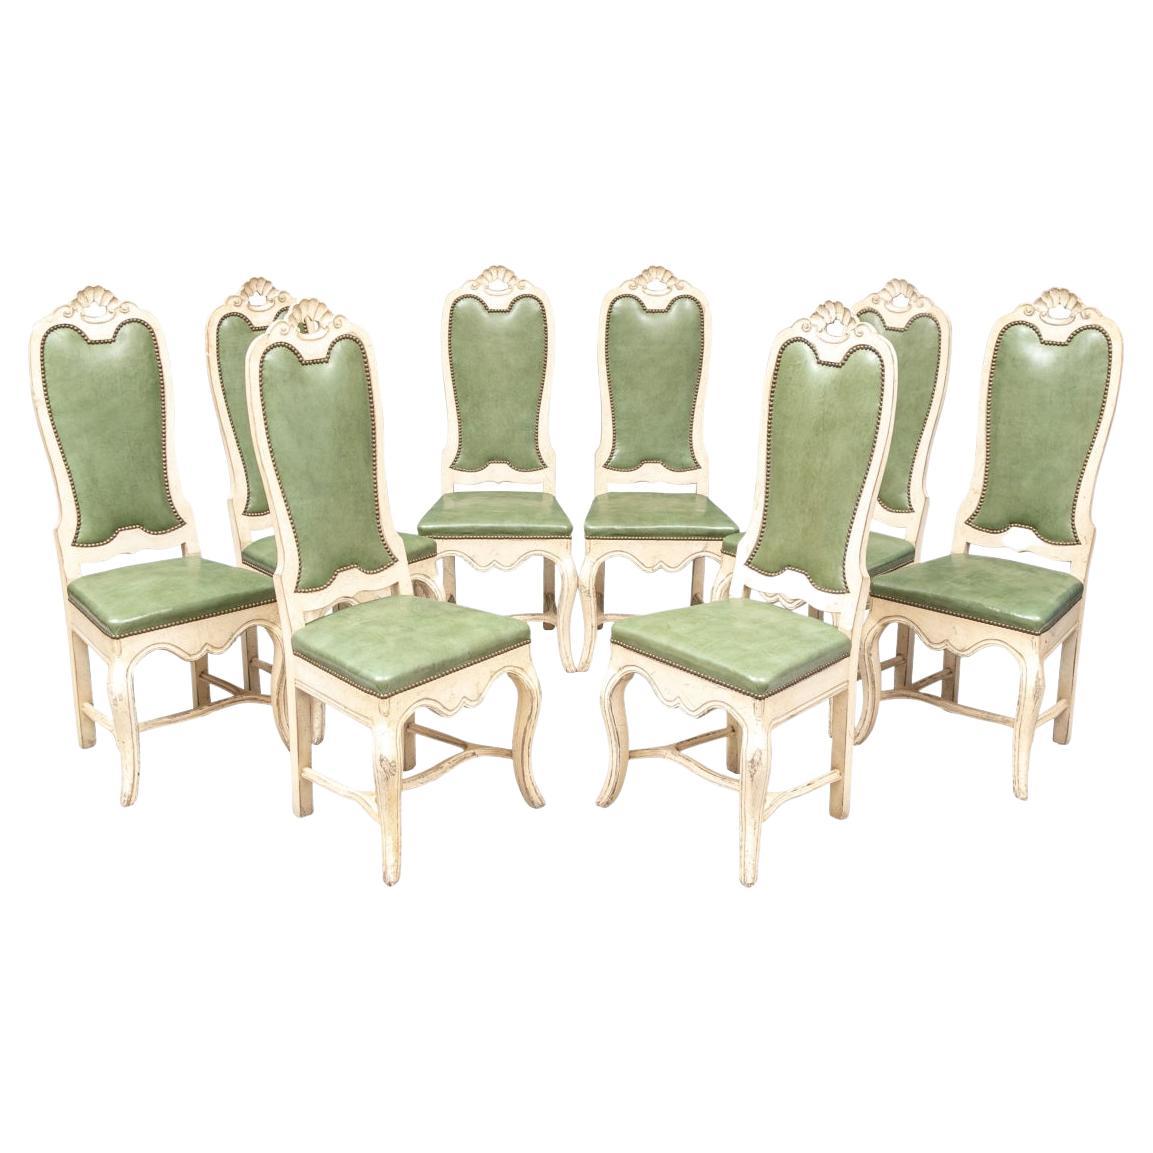 Ensemble de 8 chaises de salle à manger en bois fruitier décoré de peinture crème avec faux cuir vert